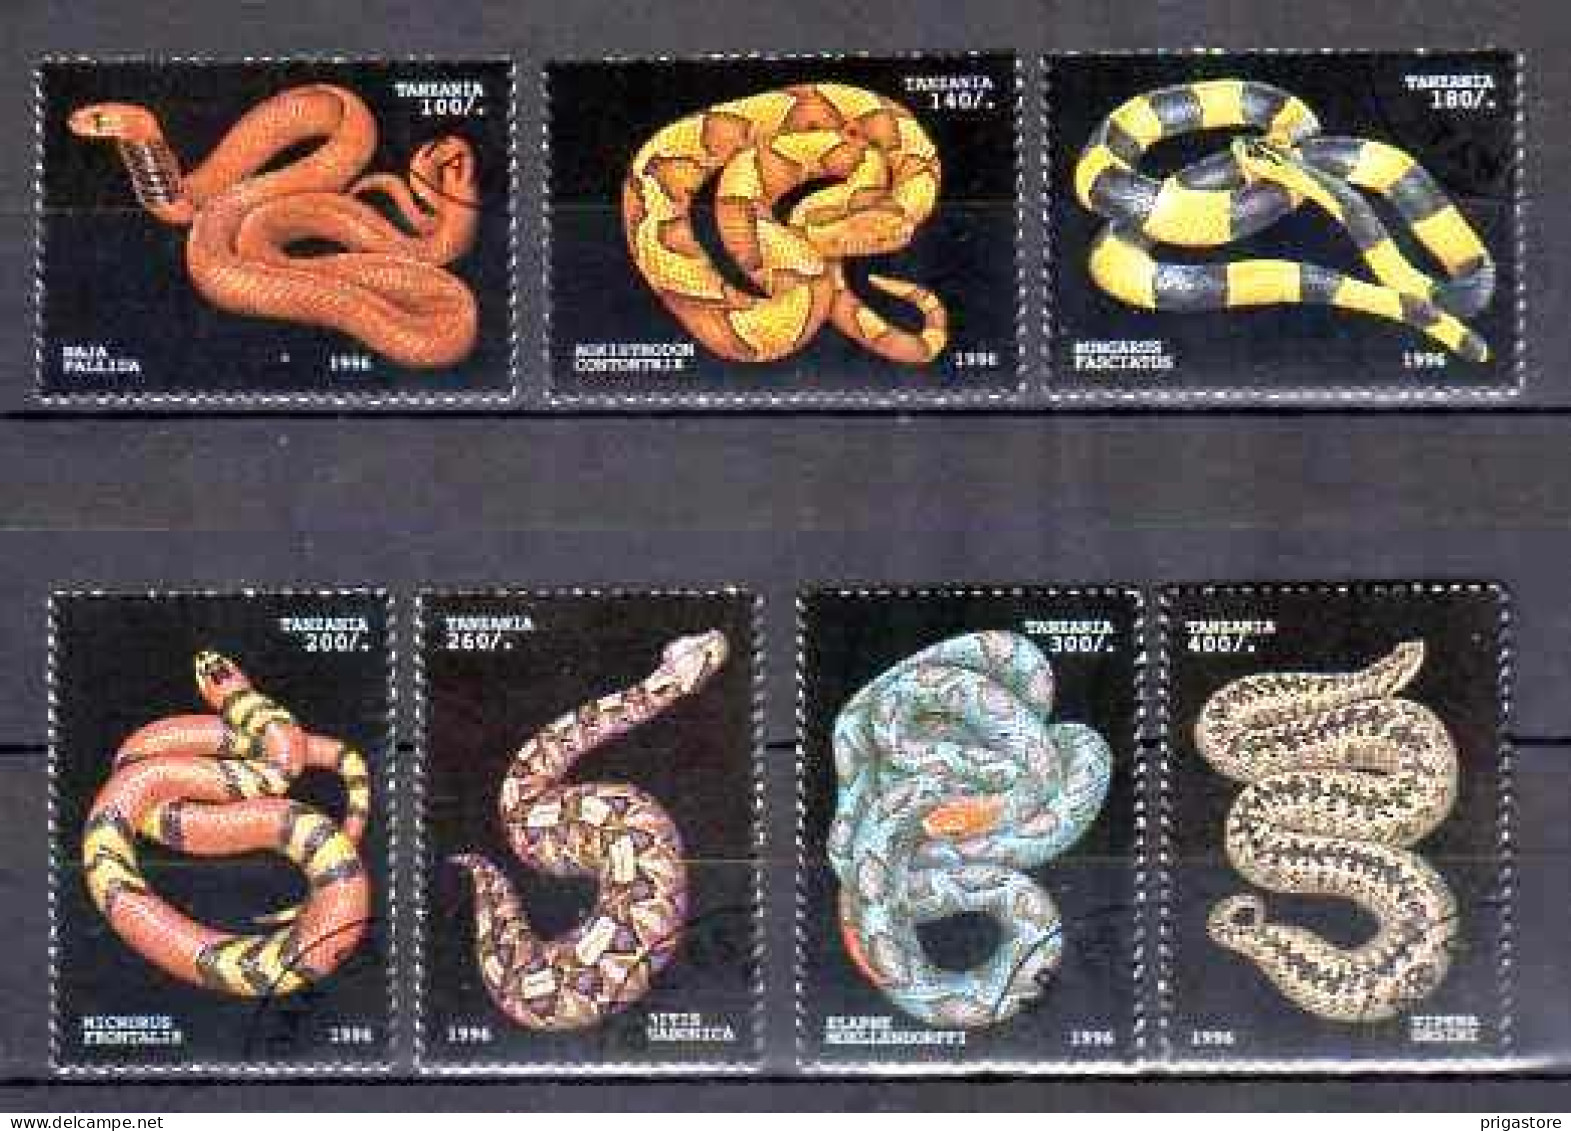 Animaux Serpents Tanzanie 1996 (48) Yvert N° 1969 à 1975 Oblitérés Used - Serpientes